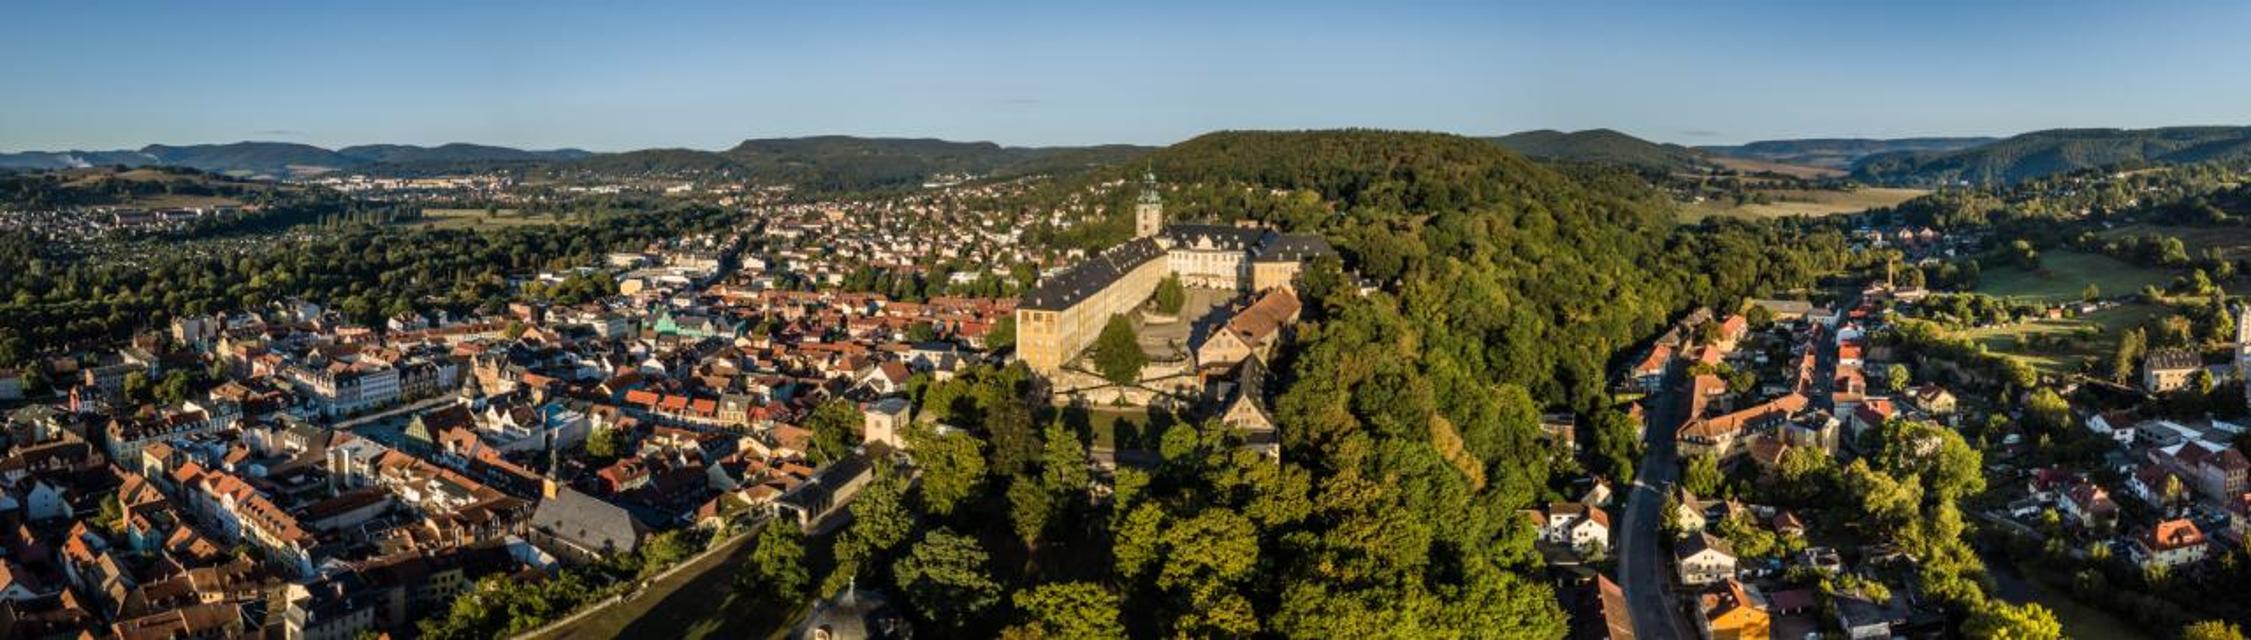 Hoch über Rudolstadt erhebt sich die Heidecksburg, die einstige Residenz der Fürsten von Schwarzburg-Rudolstadt. Rokoko en miniature et en gros – so könnte das Motto für das imposante Schloss lauten. Rokoko im Großen ist unter anderem in den einzi...